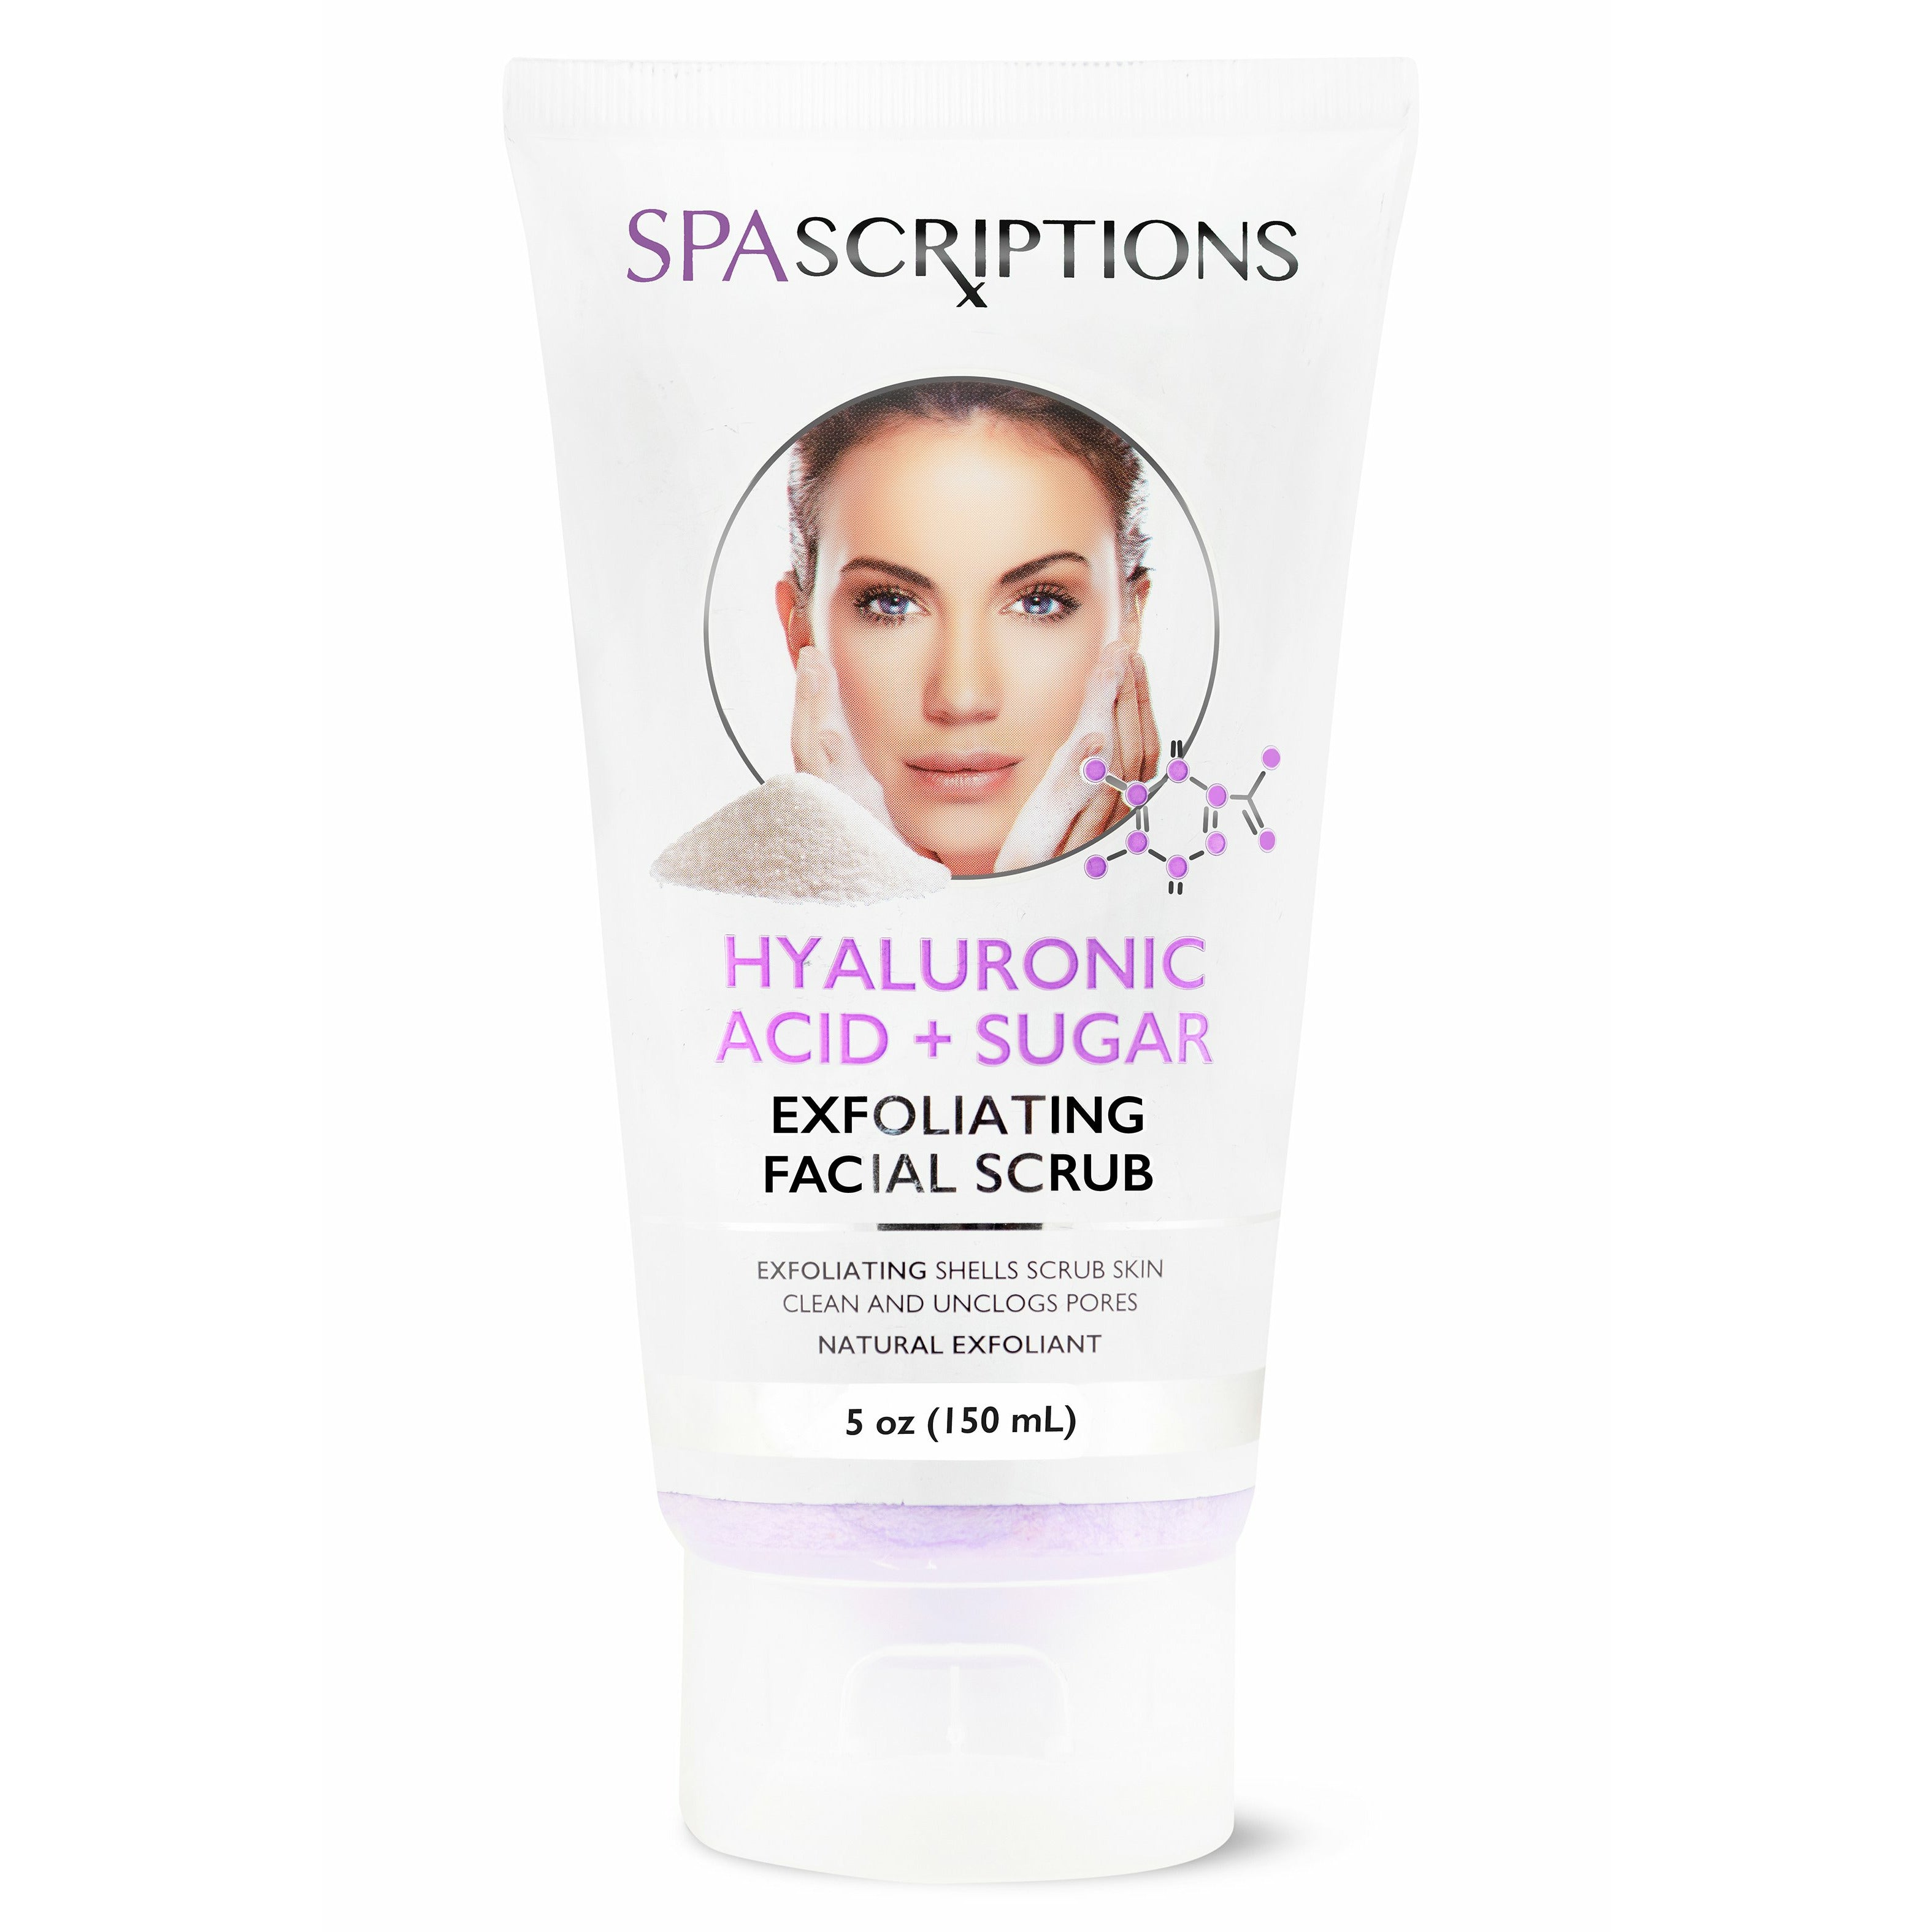 Hyaluronic Acid + Sugar Exfoliating Facial Scrub